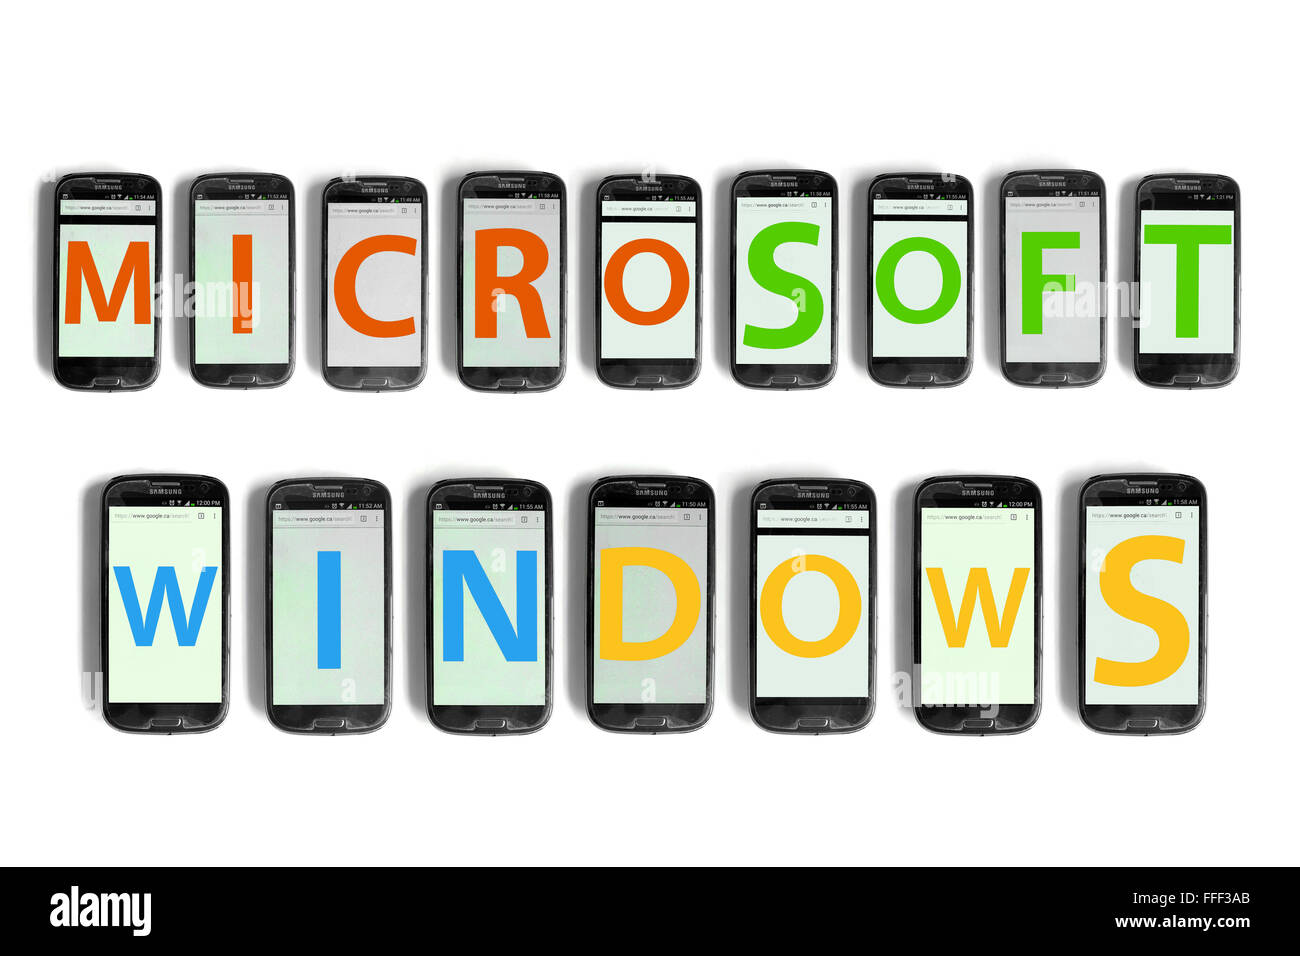 Microsoft Windows écrit sur l'écran des smartphones photographié sur un fond blanc. Banque D'Images